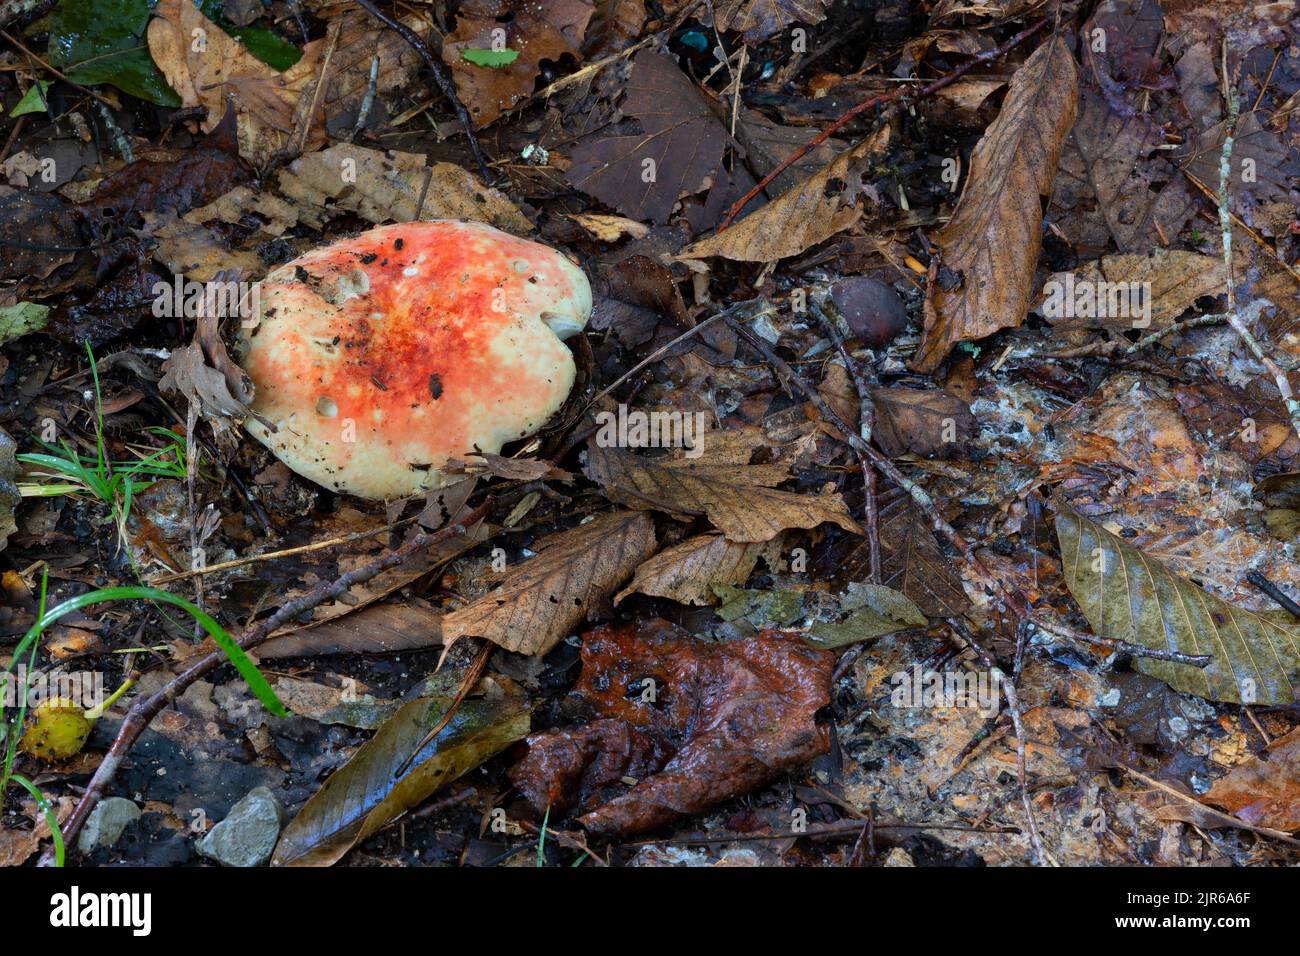 Un primer plano de un hongo que crece y se nutre de hojas en descomposición. Foto de stock